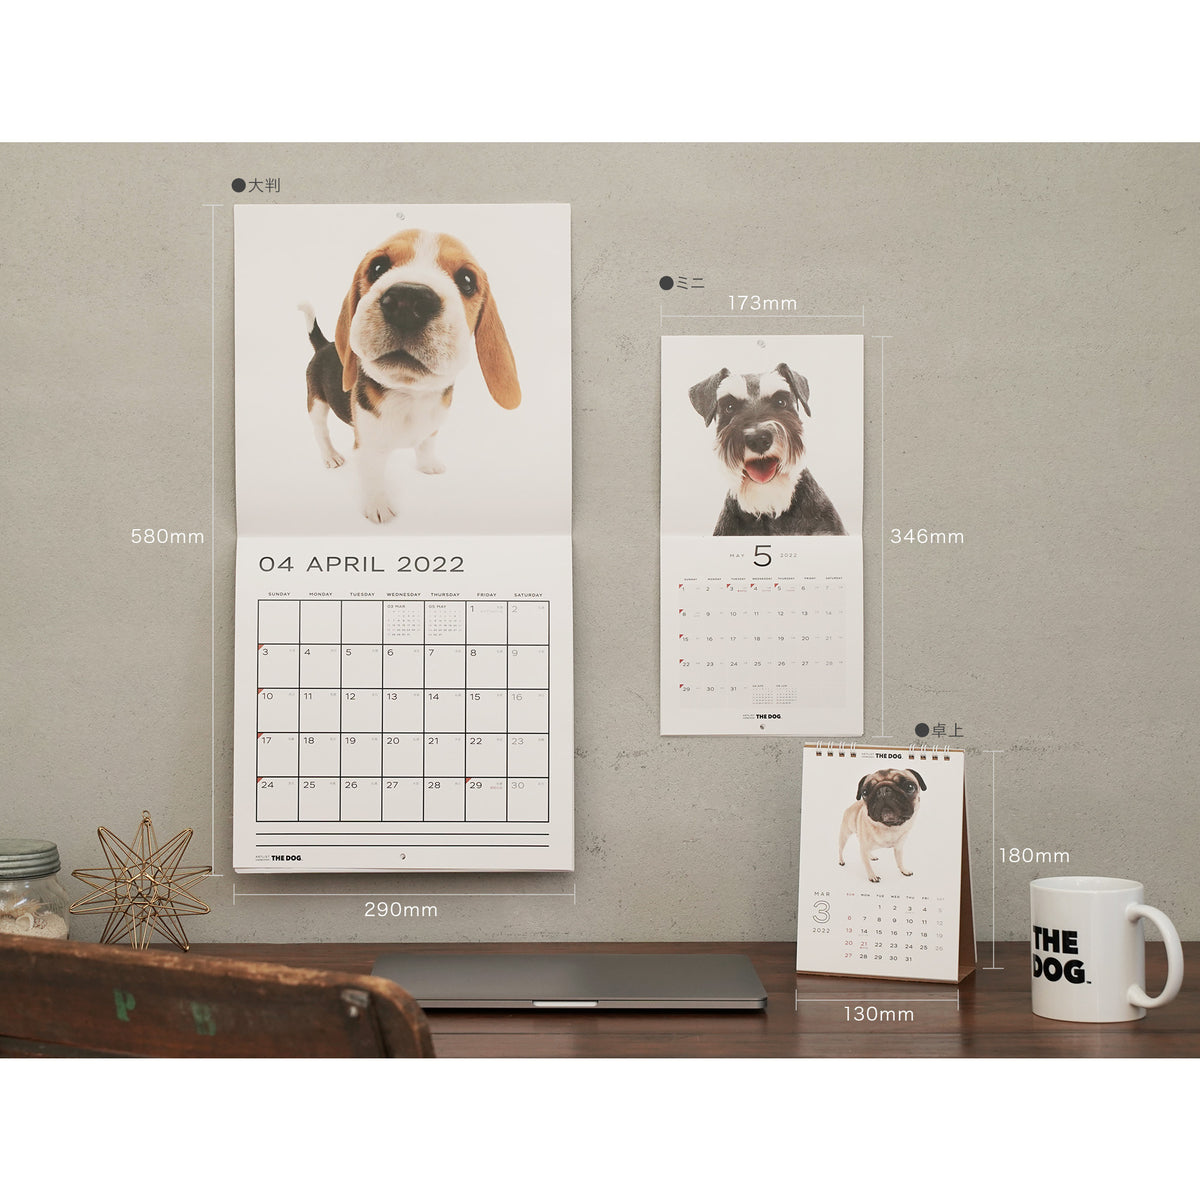 市場 予約 10月上旬発送予定 英国輸入版 ドッグカレンダー 23年 大判 ポメラニアン 壁掛け 海外輸入版 犬種別